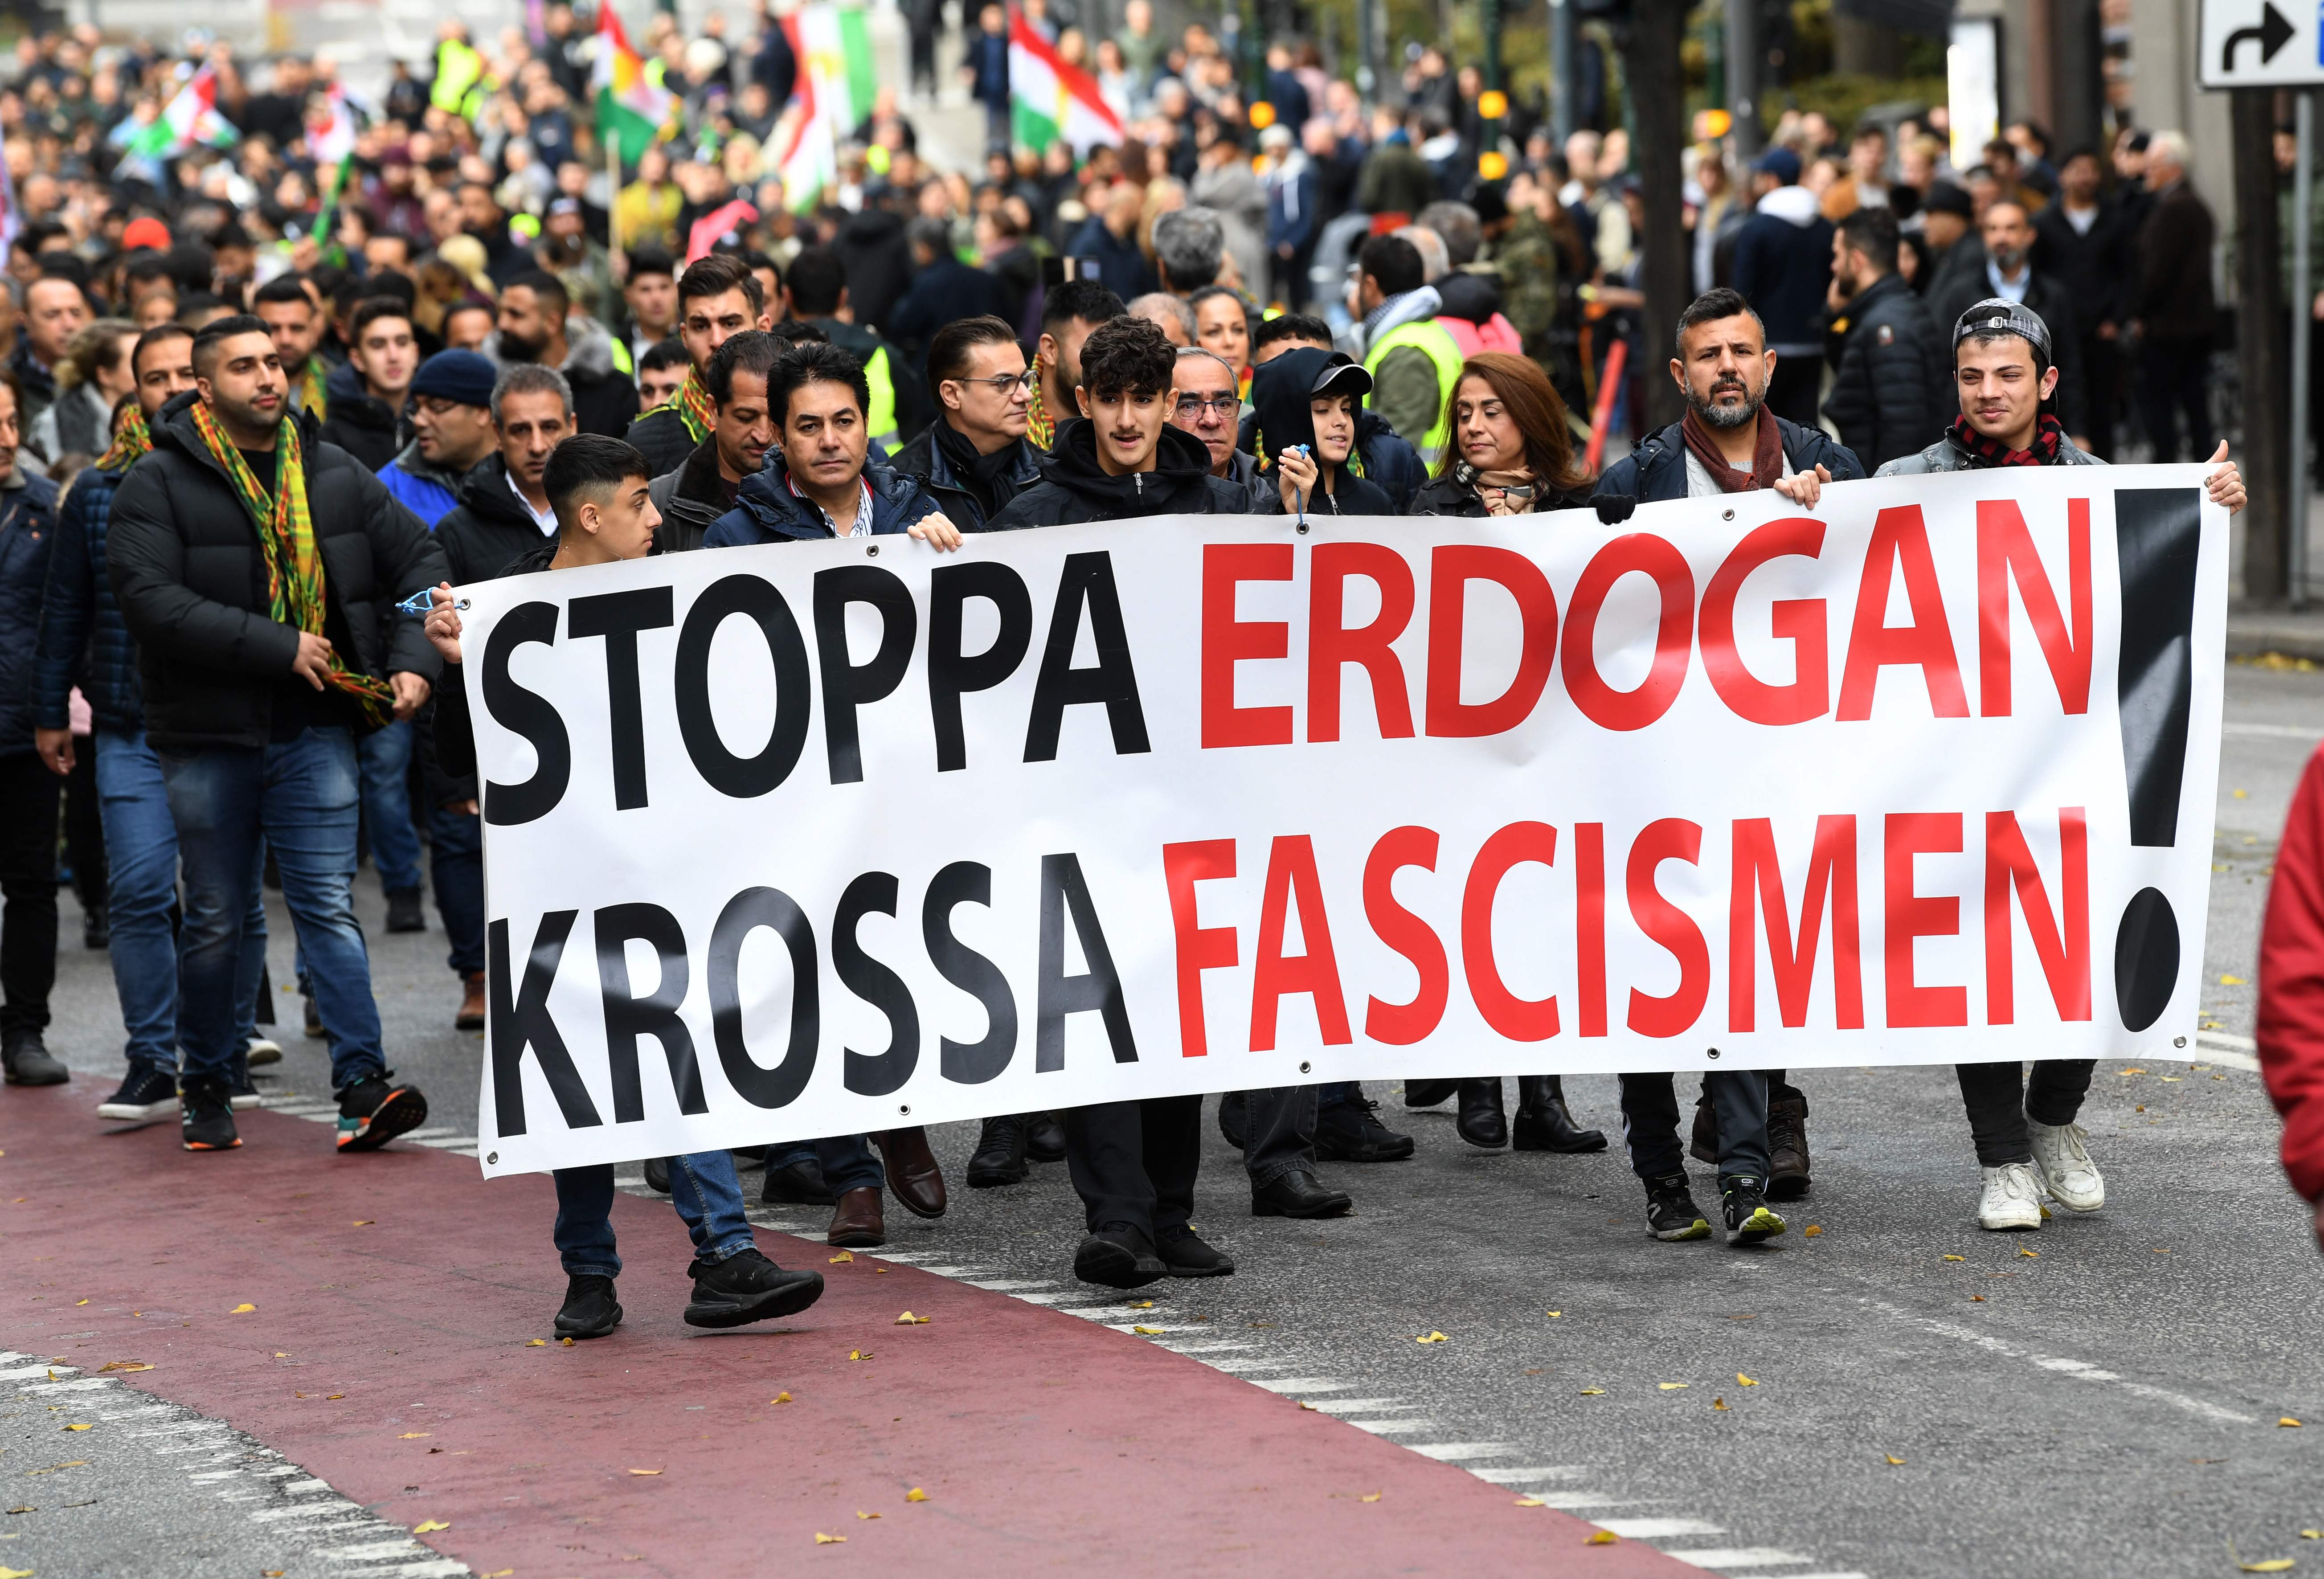 Kurdos participan en una manifestación con una pancarta que decía "Alto a Erdogan, aplasta el fascismo" en Estocolmo, Suecia, el 12 de octubre de 2019, para apoyar a los militantes kurdos mientras Turquía sigue atacando las ciudades fronterizas. (Foto Prensa Libre: AFP)